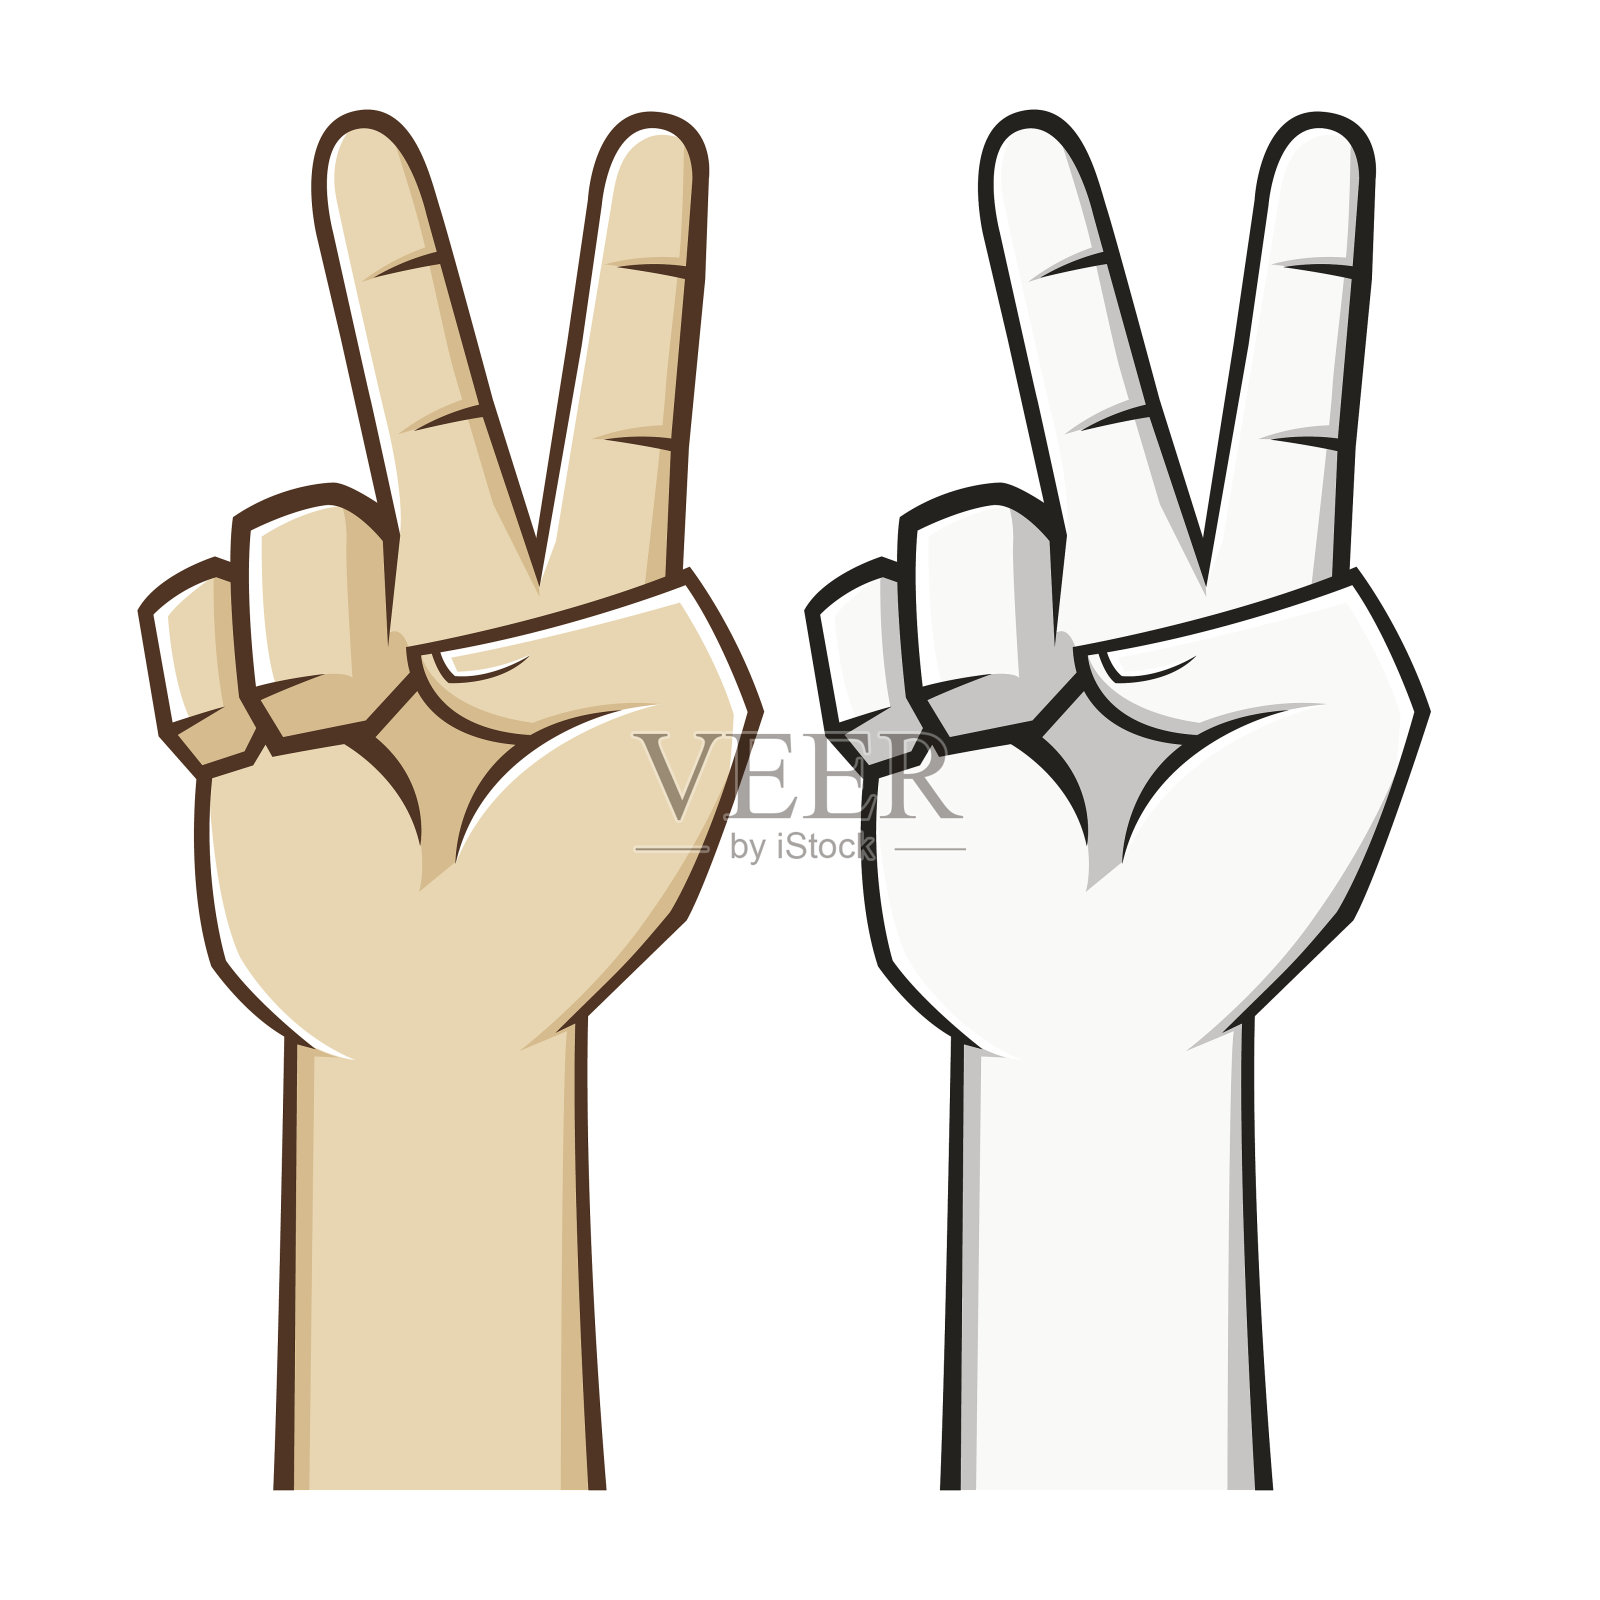 和平的手势语插画图片素材